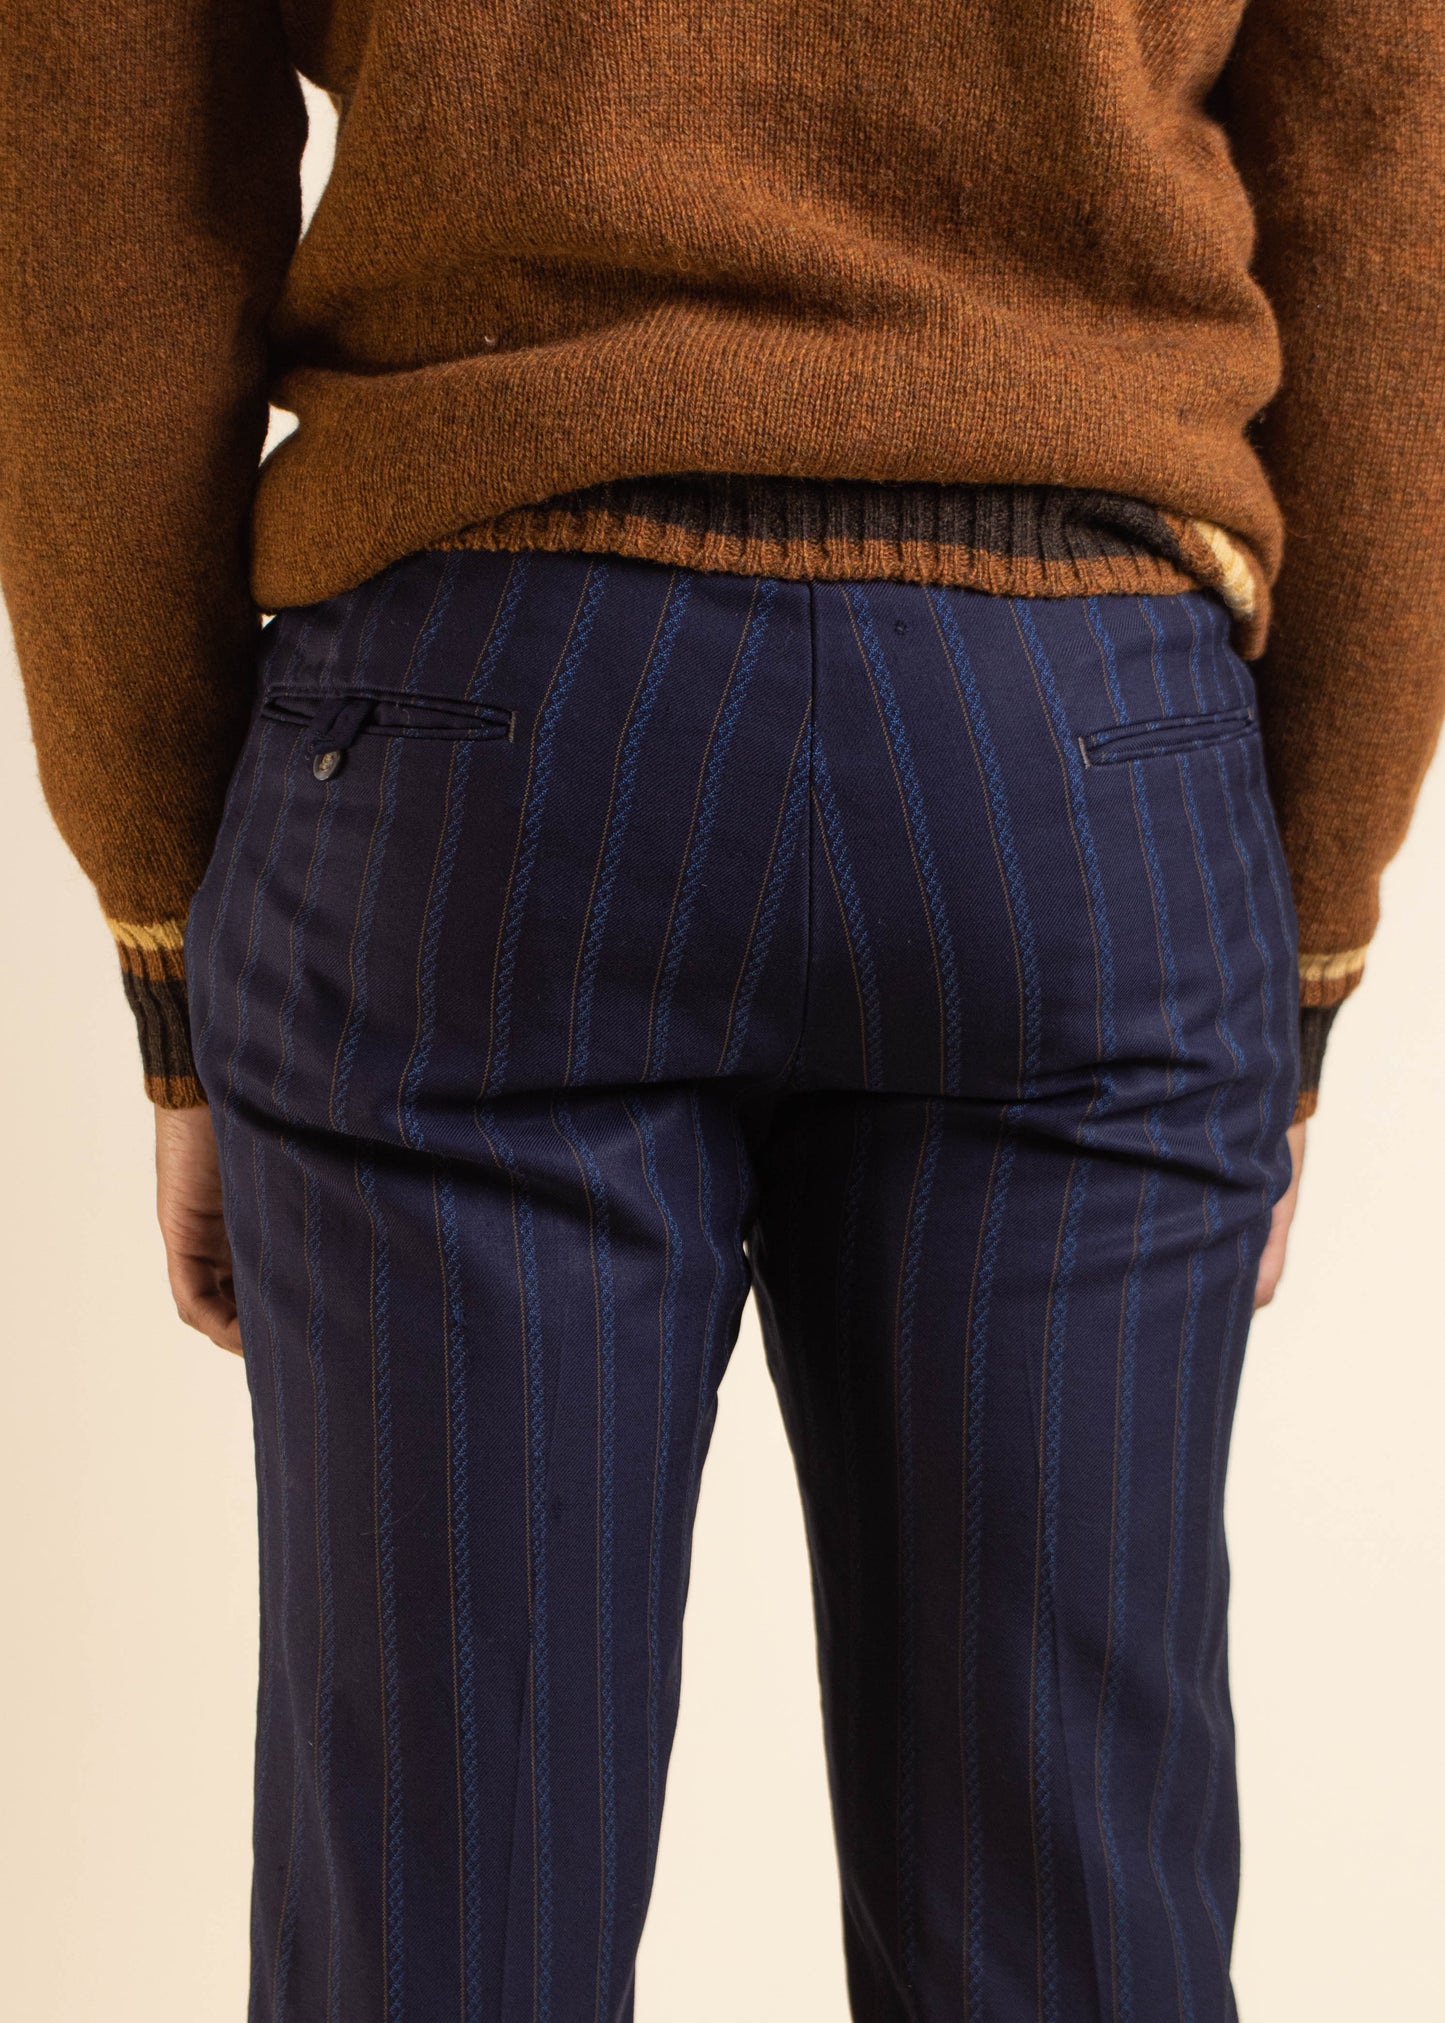 1970s Wonder Crease Stripe Pattern Wool Trouser Pants Size Women's 30 Men's 32 - 5877 blue